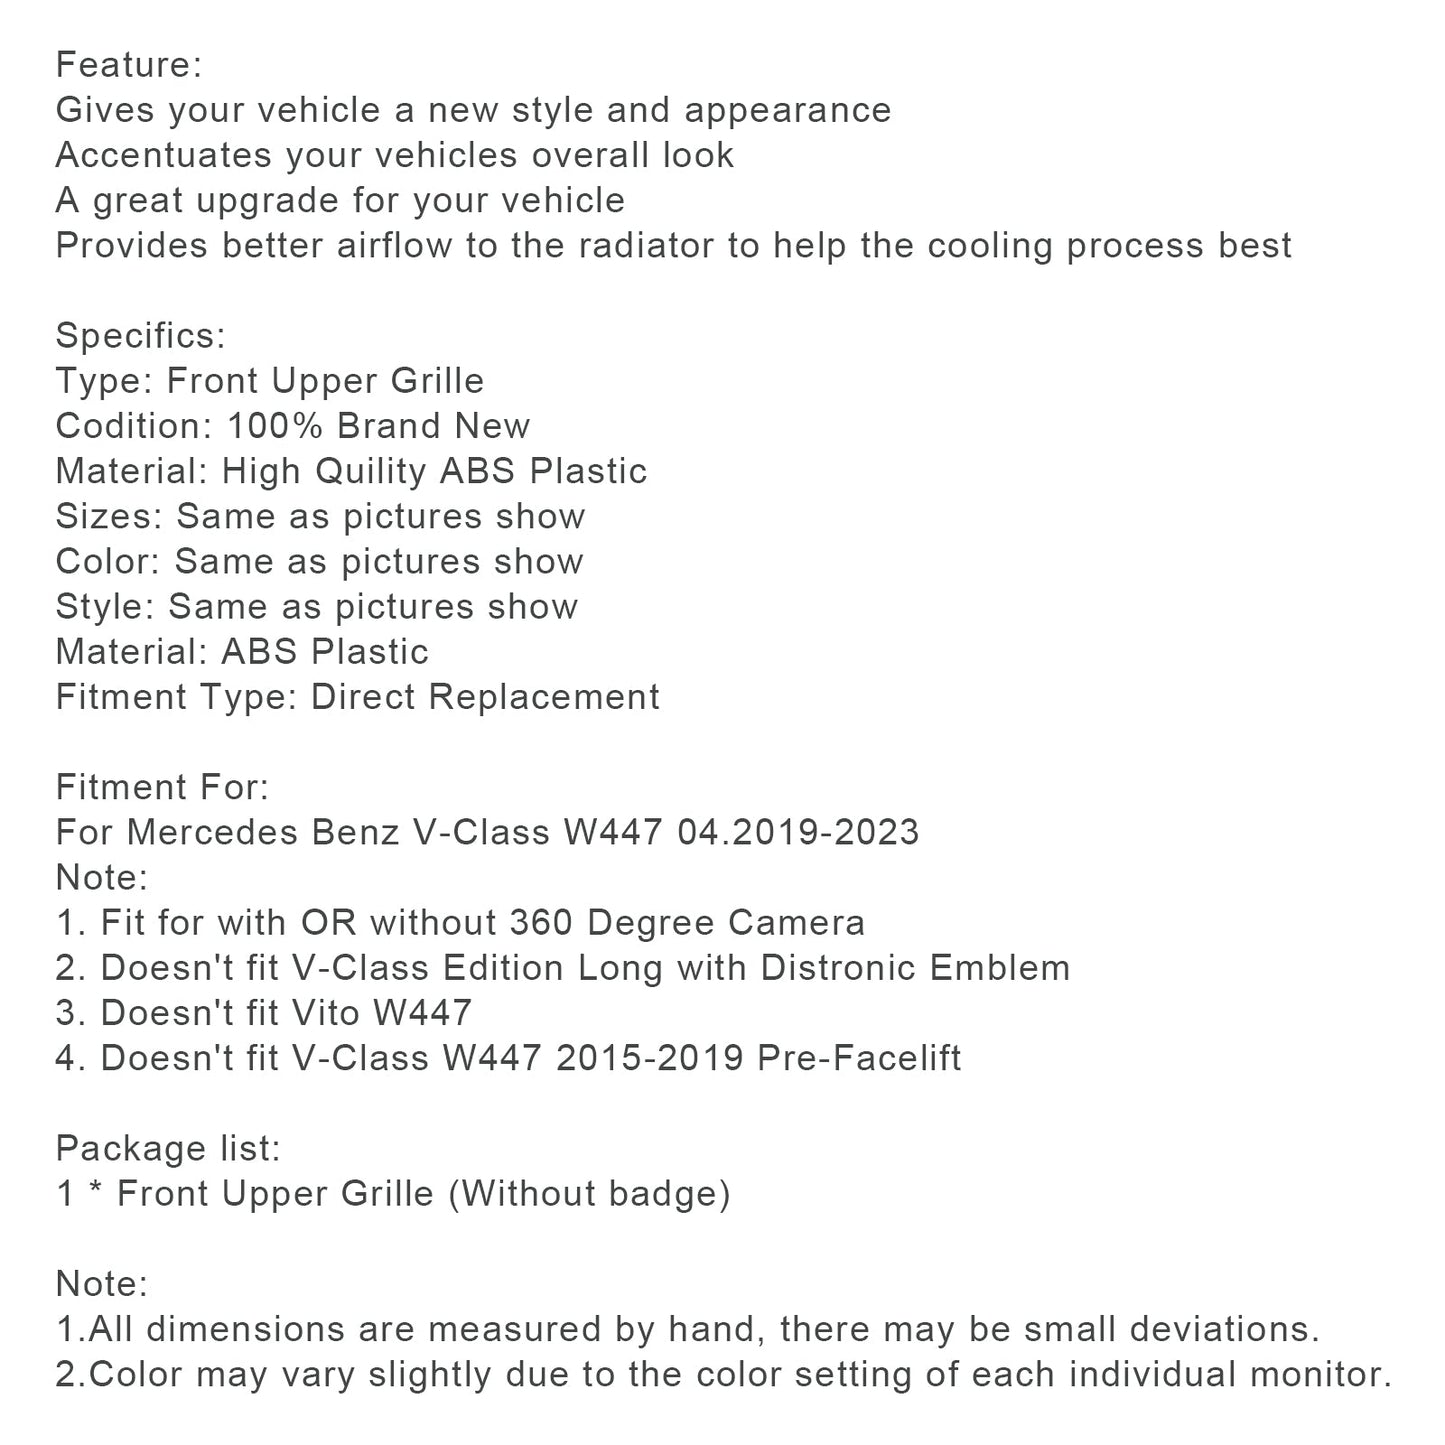 04.2019-2023 V-Klasse W447 Mercedes Benz Front-Obergrill